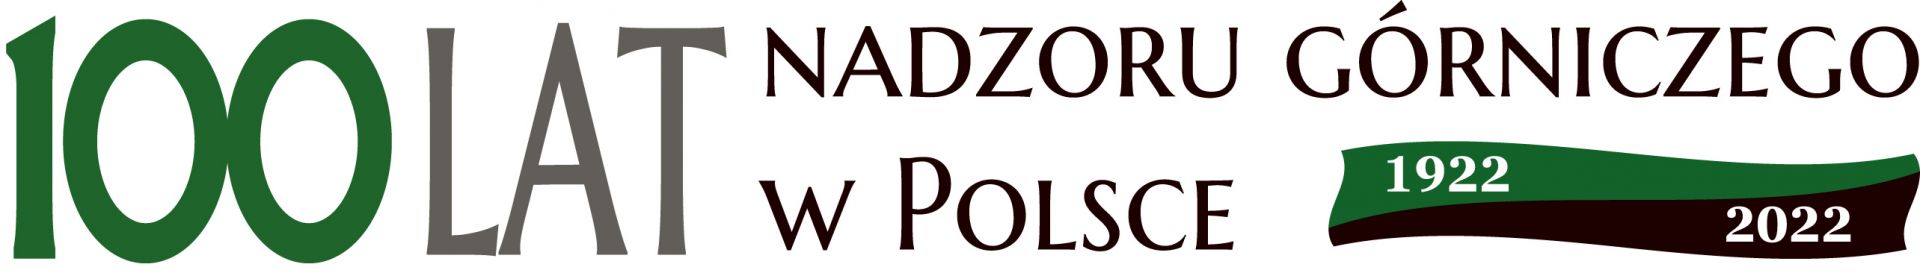 logo 100-lecia nadzoru górniczego w Polsce